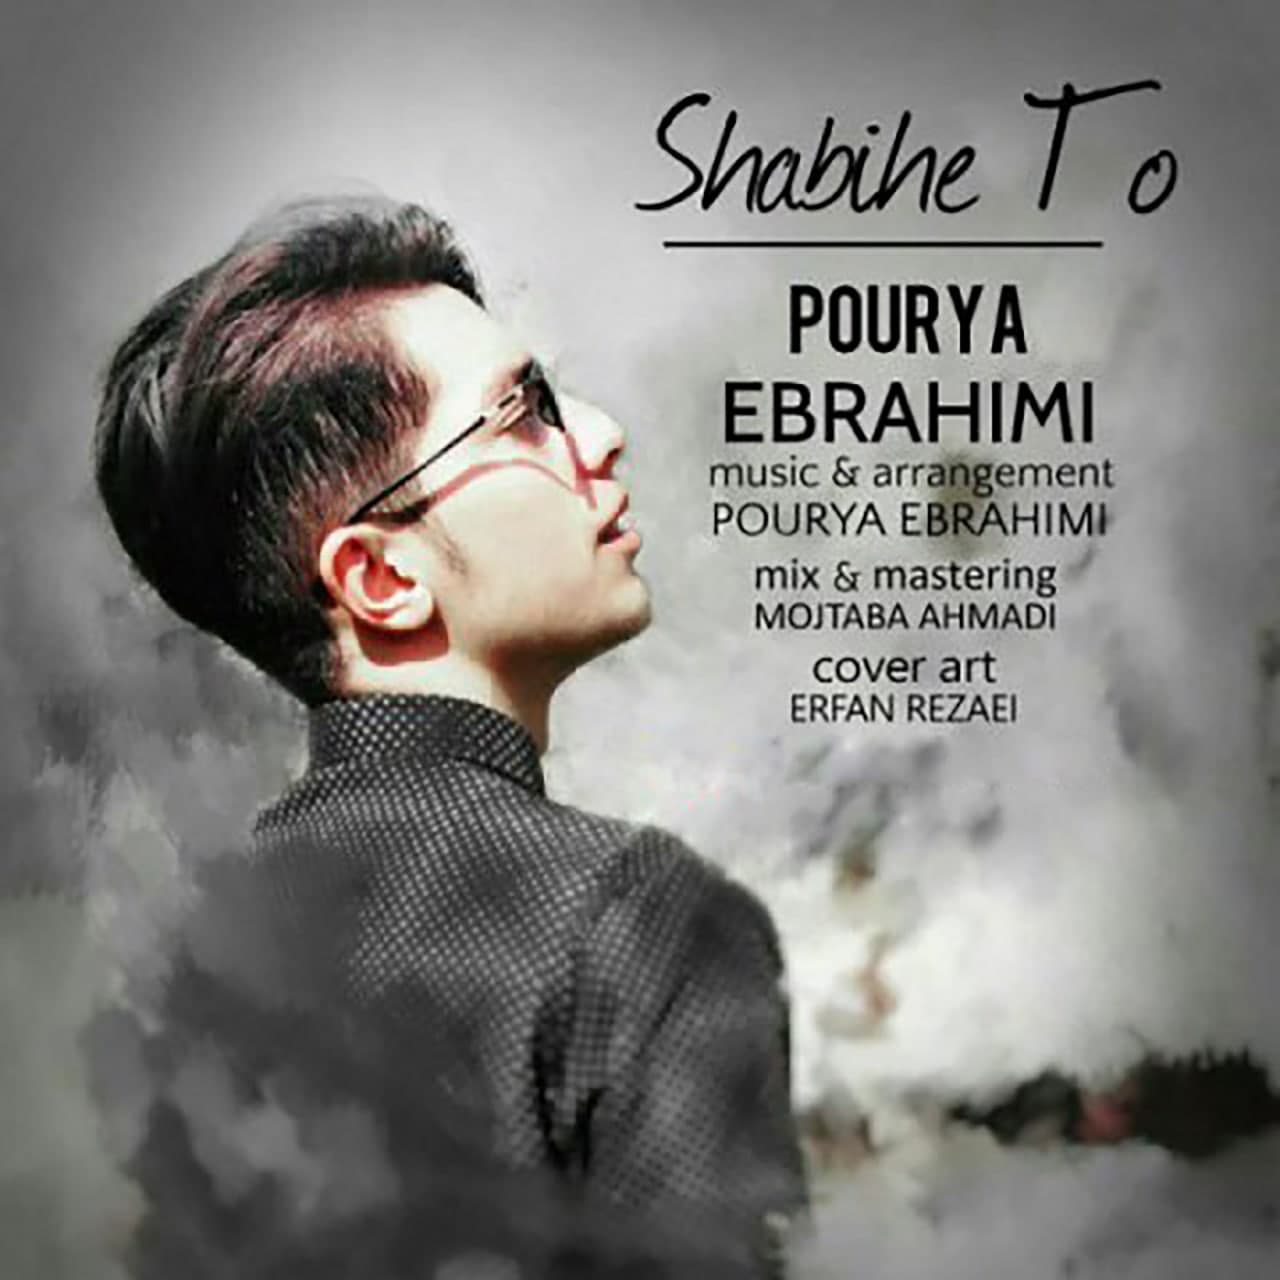  دانلود آهنگ جدید پوریا ابراهیمی - شبیه تو | Download New Music By Pourya Ebrahimi - Shabihe To